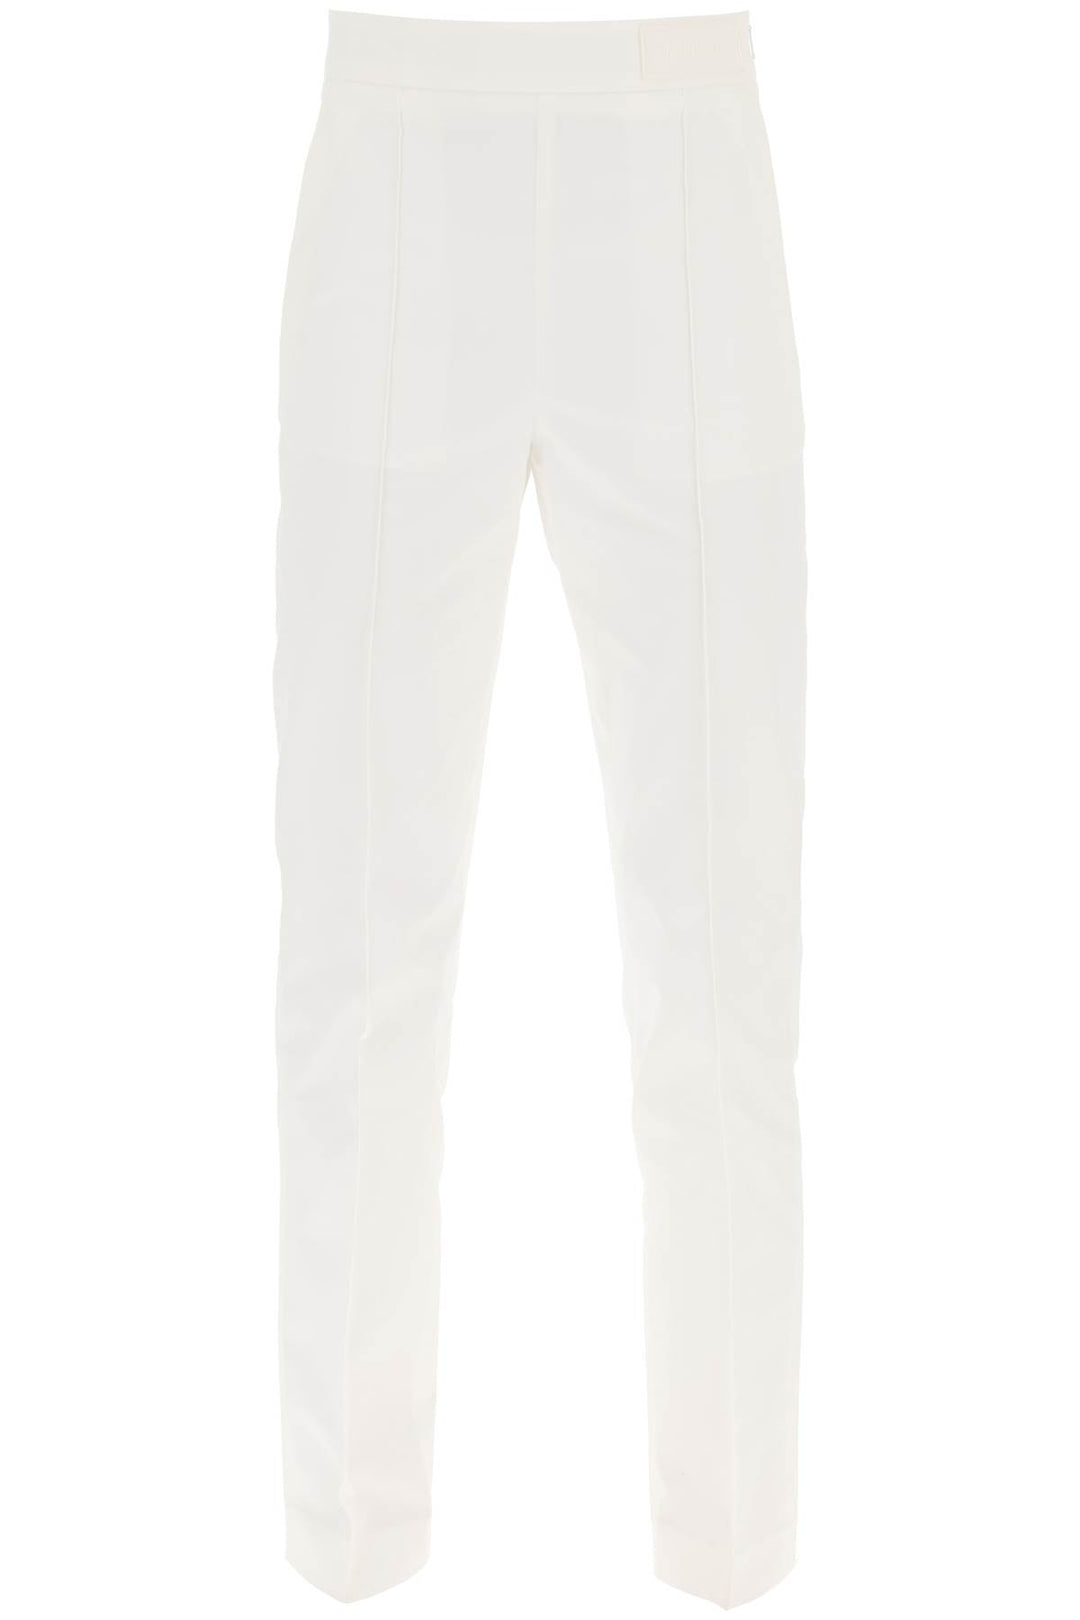 Moncler Cotton Cigarette Pants   Bianco